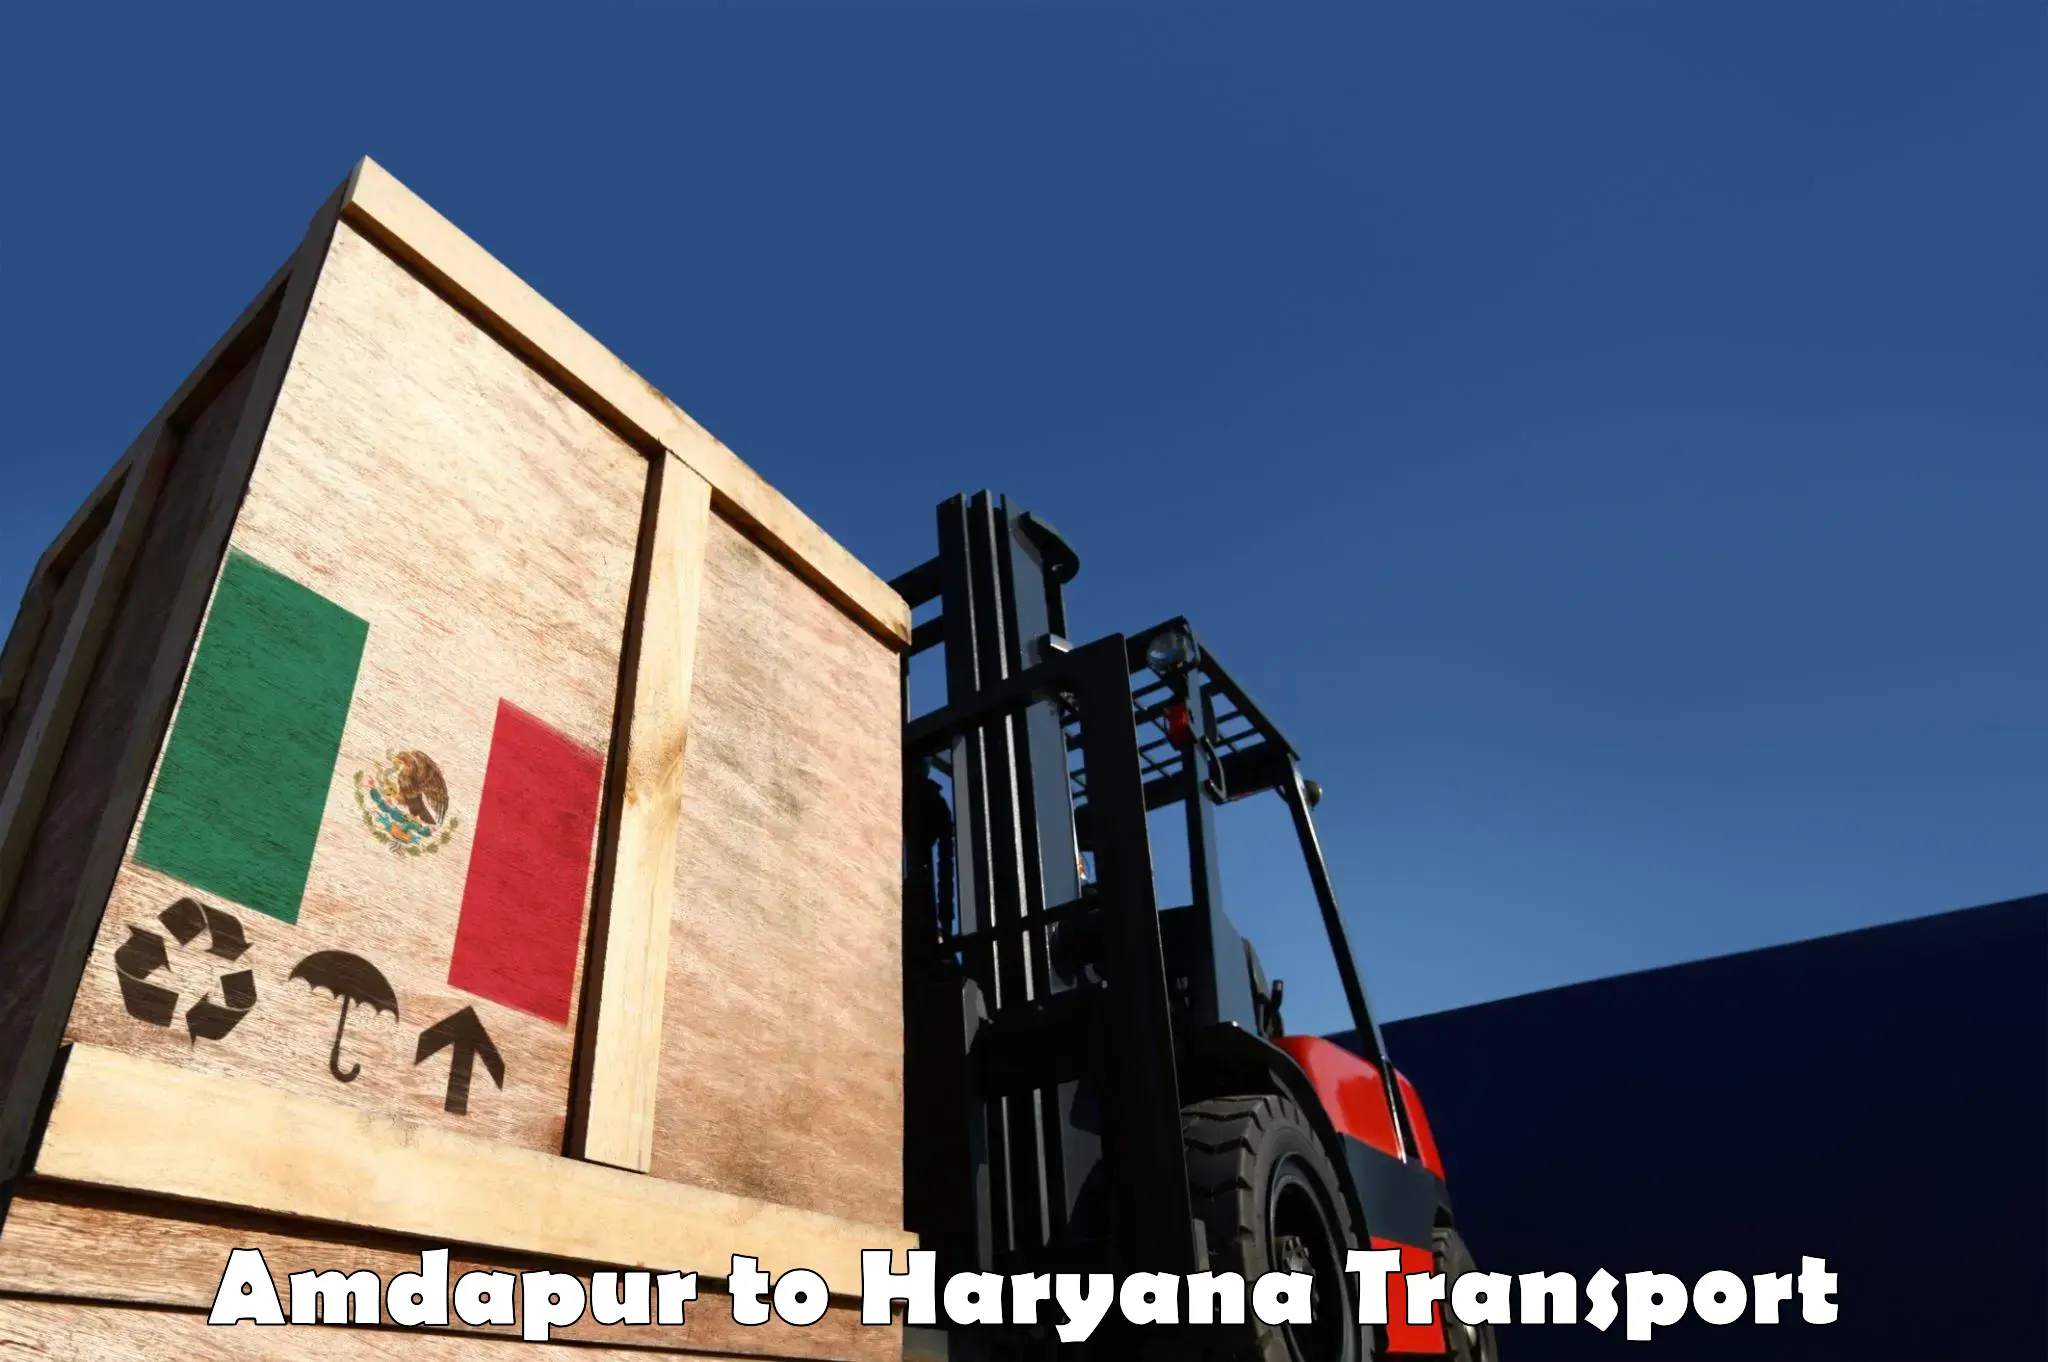 Transport in sharing Amdapur to Julana